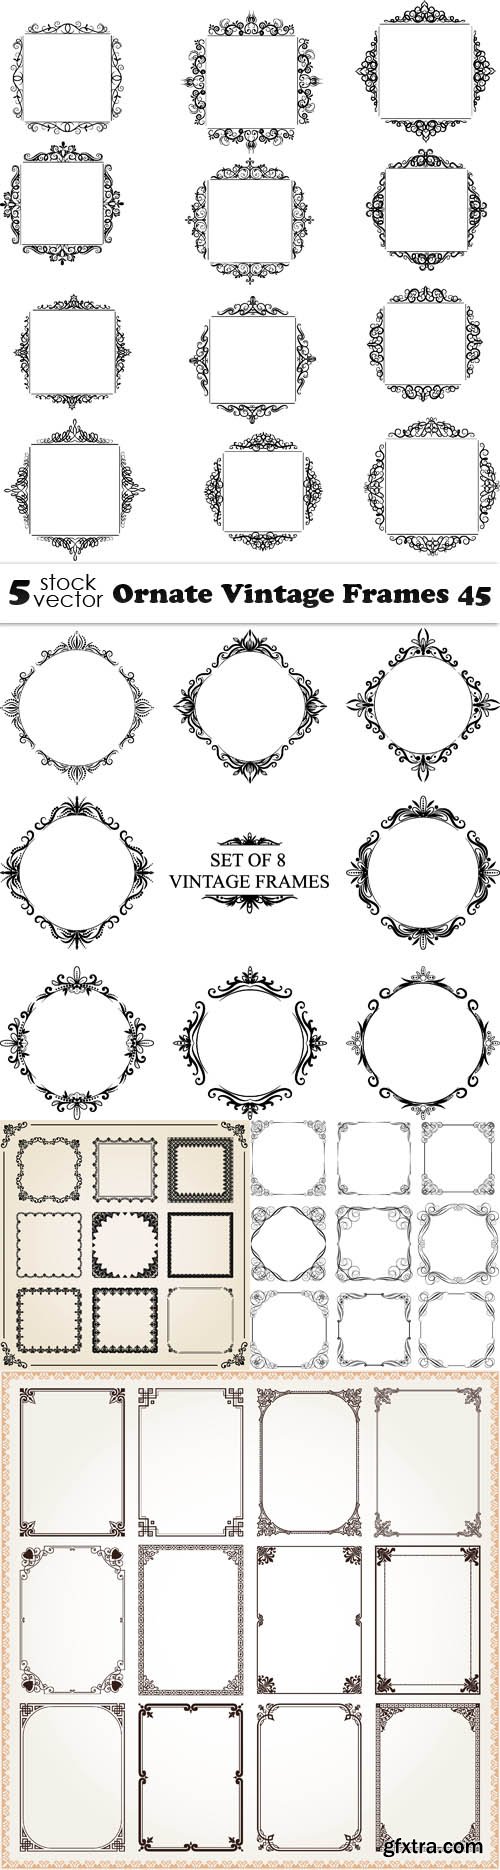 Vectors - Ornate Vintage Frames 45